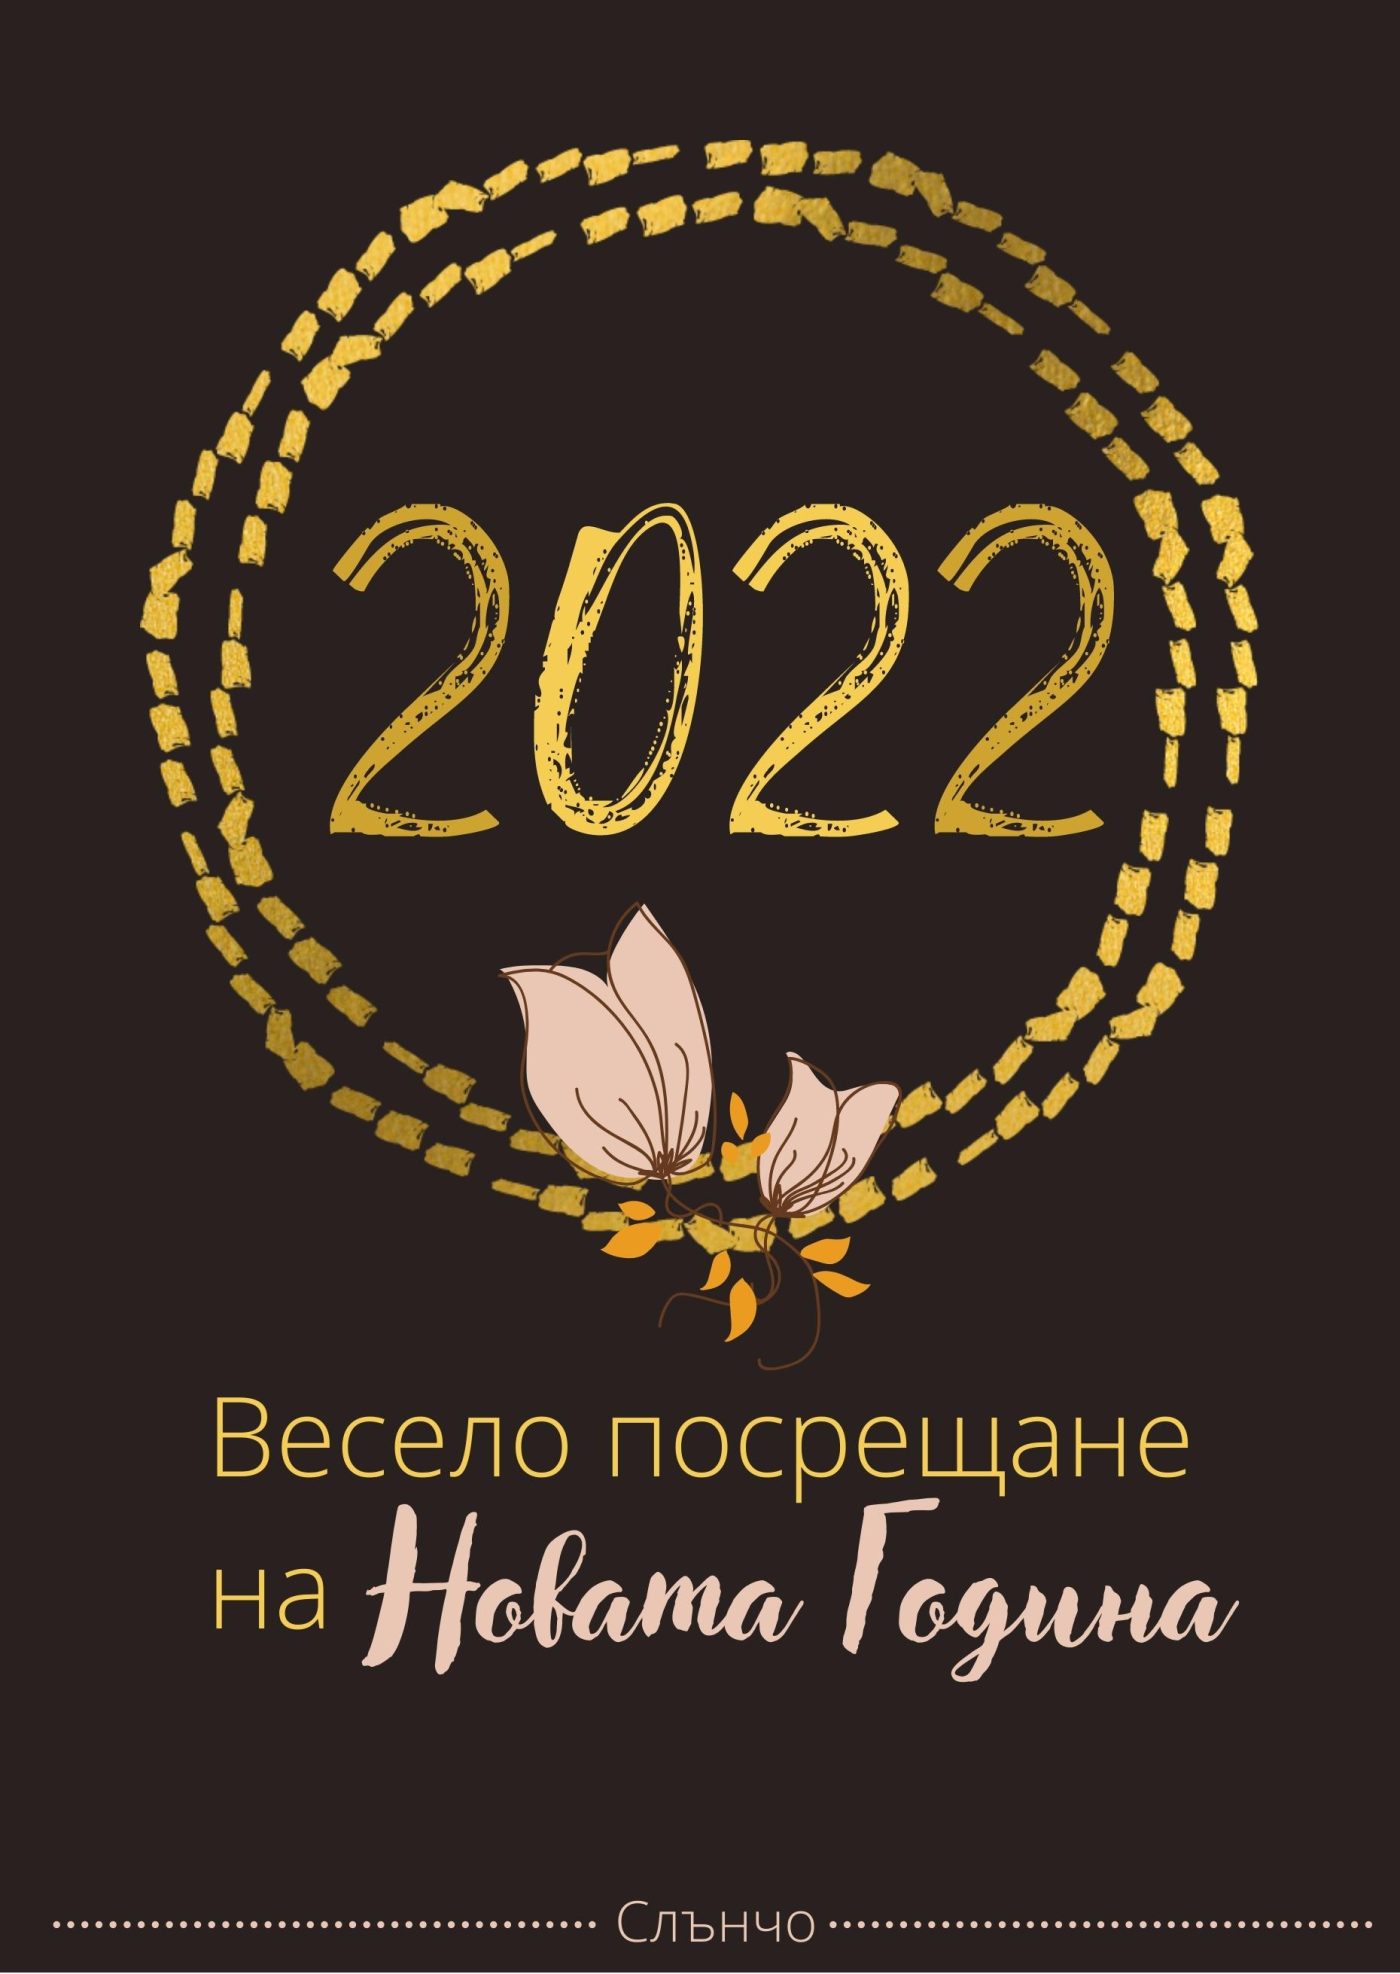 Весело посрещане на Новата 2022 година - картички за нова година, честита нова година, новогодишни пожелания, слънчо обичкам те